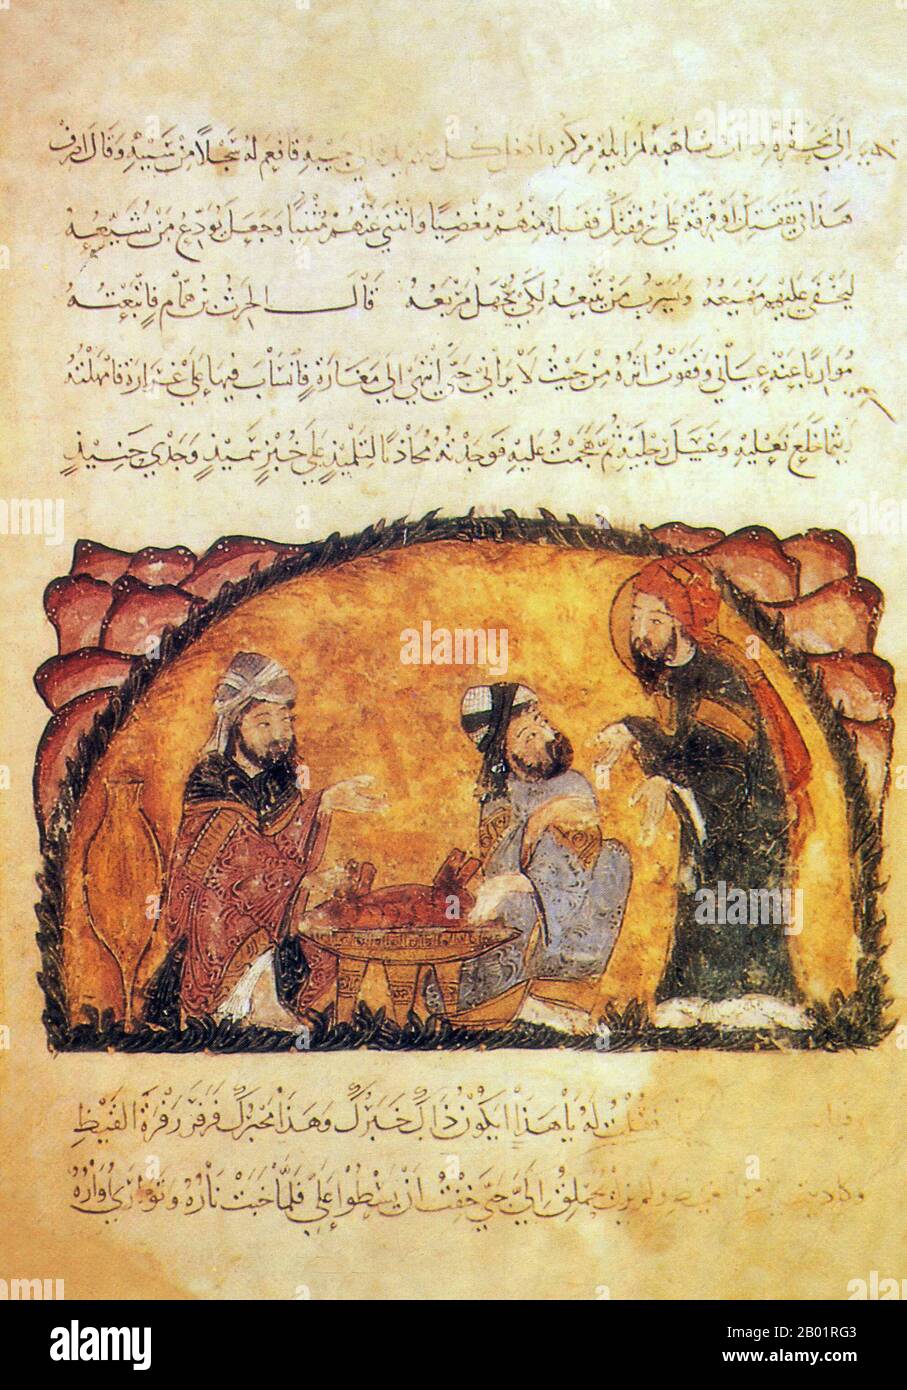 Iraq: Tre uomini che parlano e mangiano. Pittura in miniatura di Yahya ibn Mahmud al-Wasiti, 1237 d.C. Yahyâ ibn Mahmûd al-Wâsitî è stato un artista arabo islamico del XIII secolo. Al-Wasiti è nato a Wasit, nel sud dell'Iraq. Era noto per le sue illustrazioni del Maqam di al-Hariri. I Maqāma (letteralmente "assemblee") sono un genere letterario arabo (originariamente) di prosa rimata con intervalli di poesia in cui la stravaganza retorica è evidente. Si dice che l'autore del X secolo Badī' al-Zaman al-Hamadhāni abbia inventato la forma, che fu estesa da al-Hariri di Bassora nel secolo successivo. Foto Stock